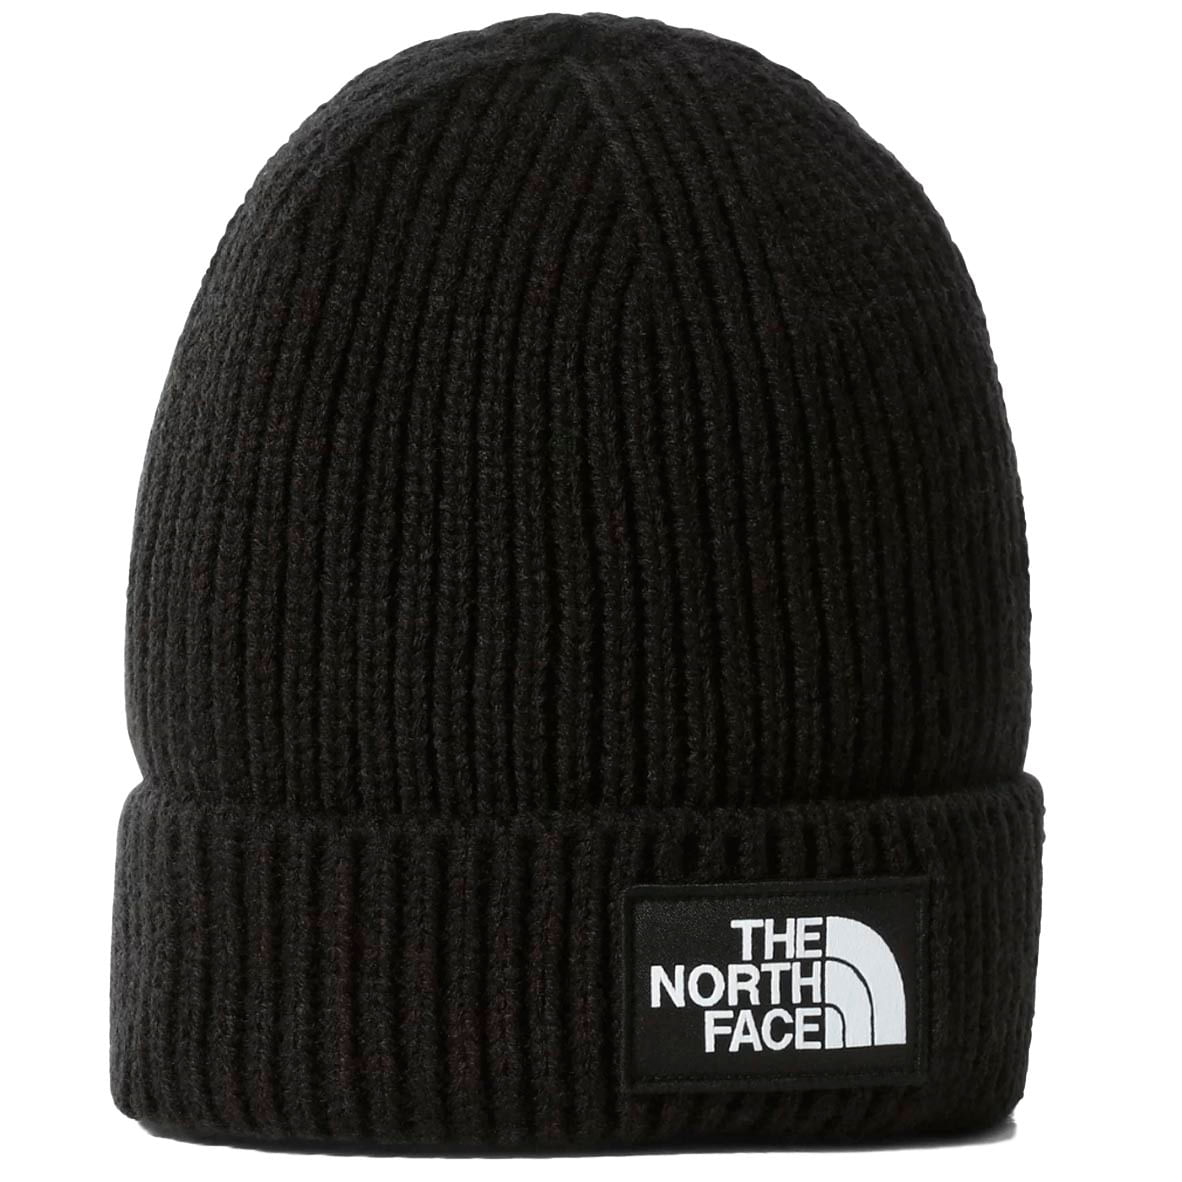 The North Face - Cuffia con patch TNF su Arteni.it